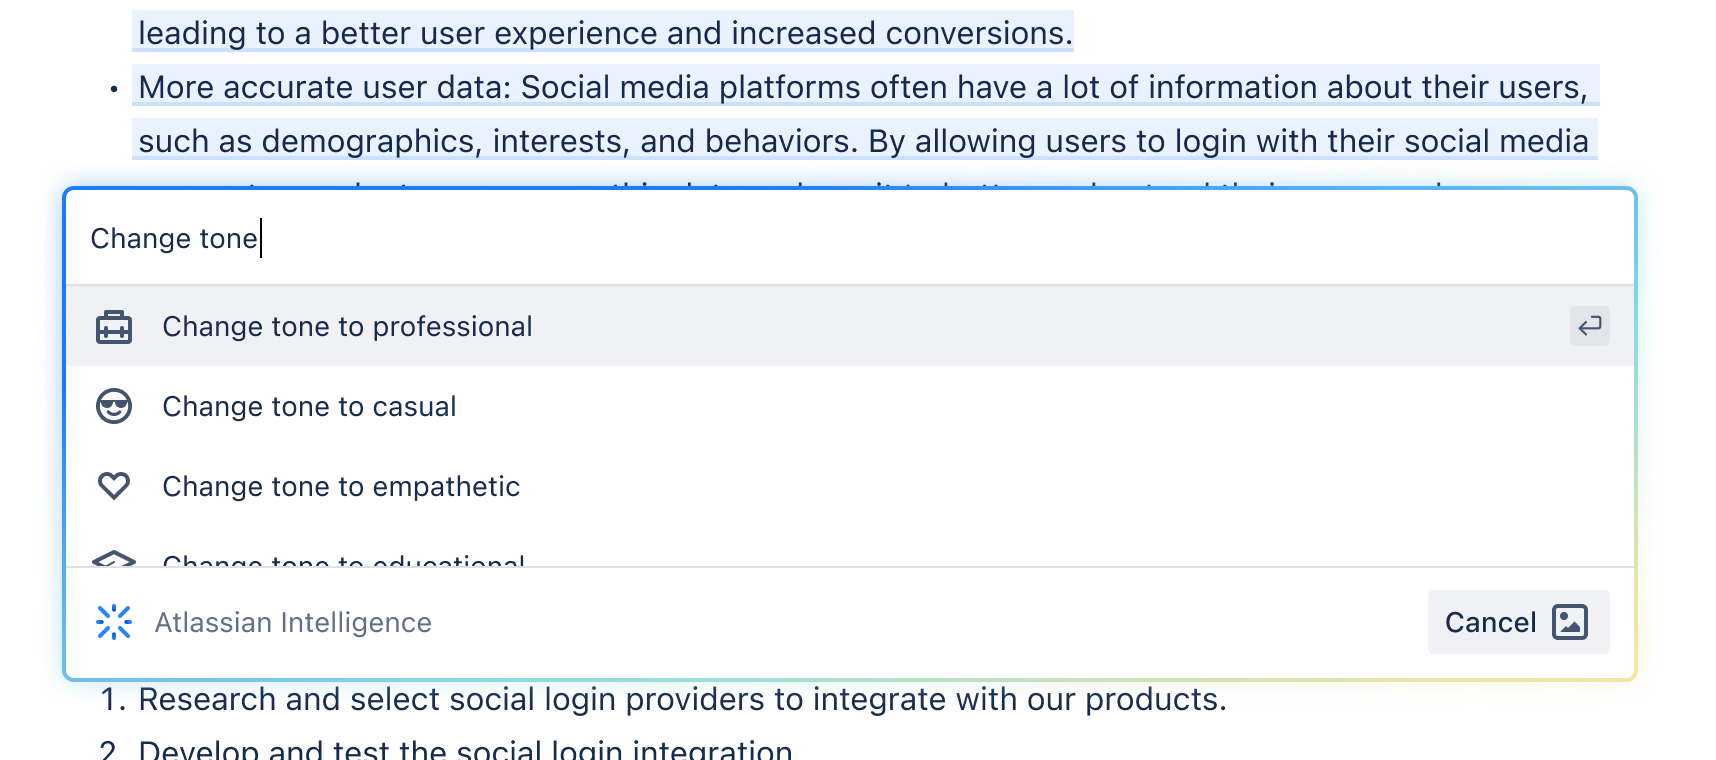 コンテンツ編集時における Atlassian Intelligence の操作例